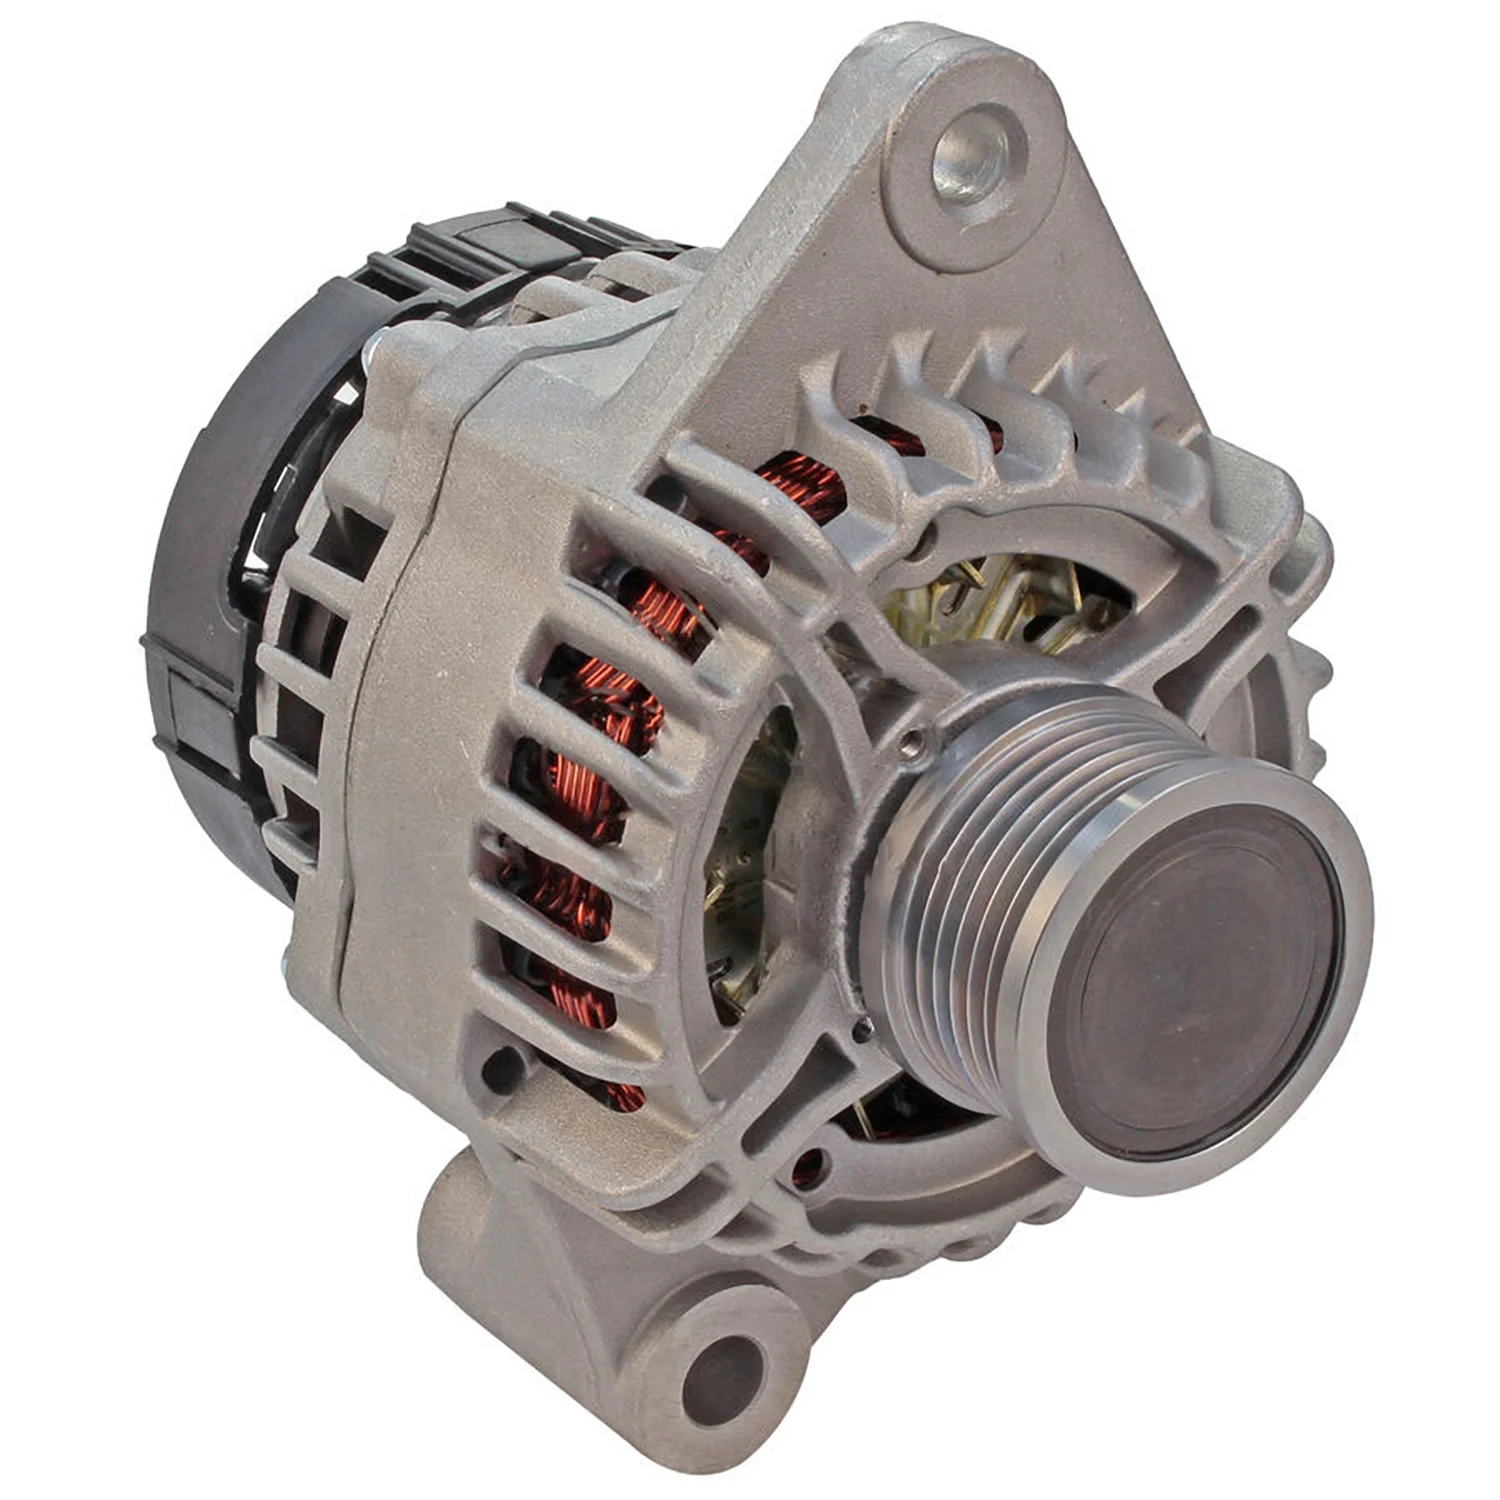 

Auto Dynamo Alternator Generator For BSH Delco DENS FIATA GM Lucas VLEO 0124425100 0986048791 0986048793 0986083210 113955